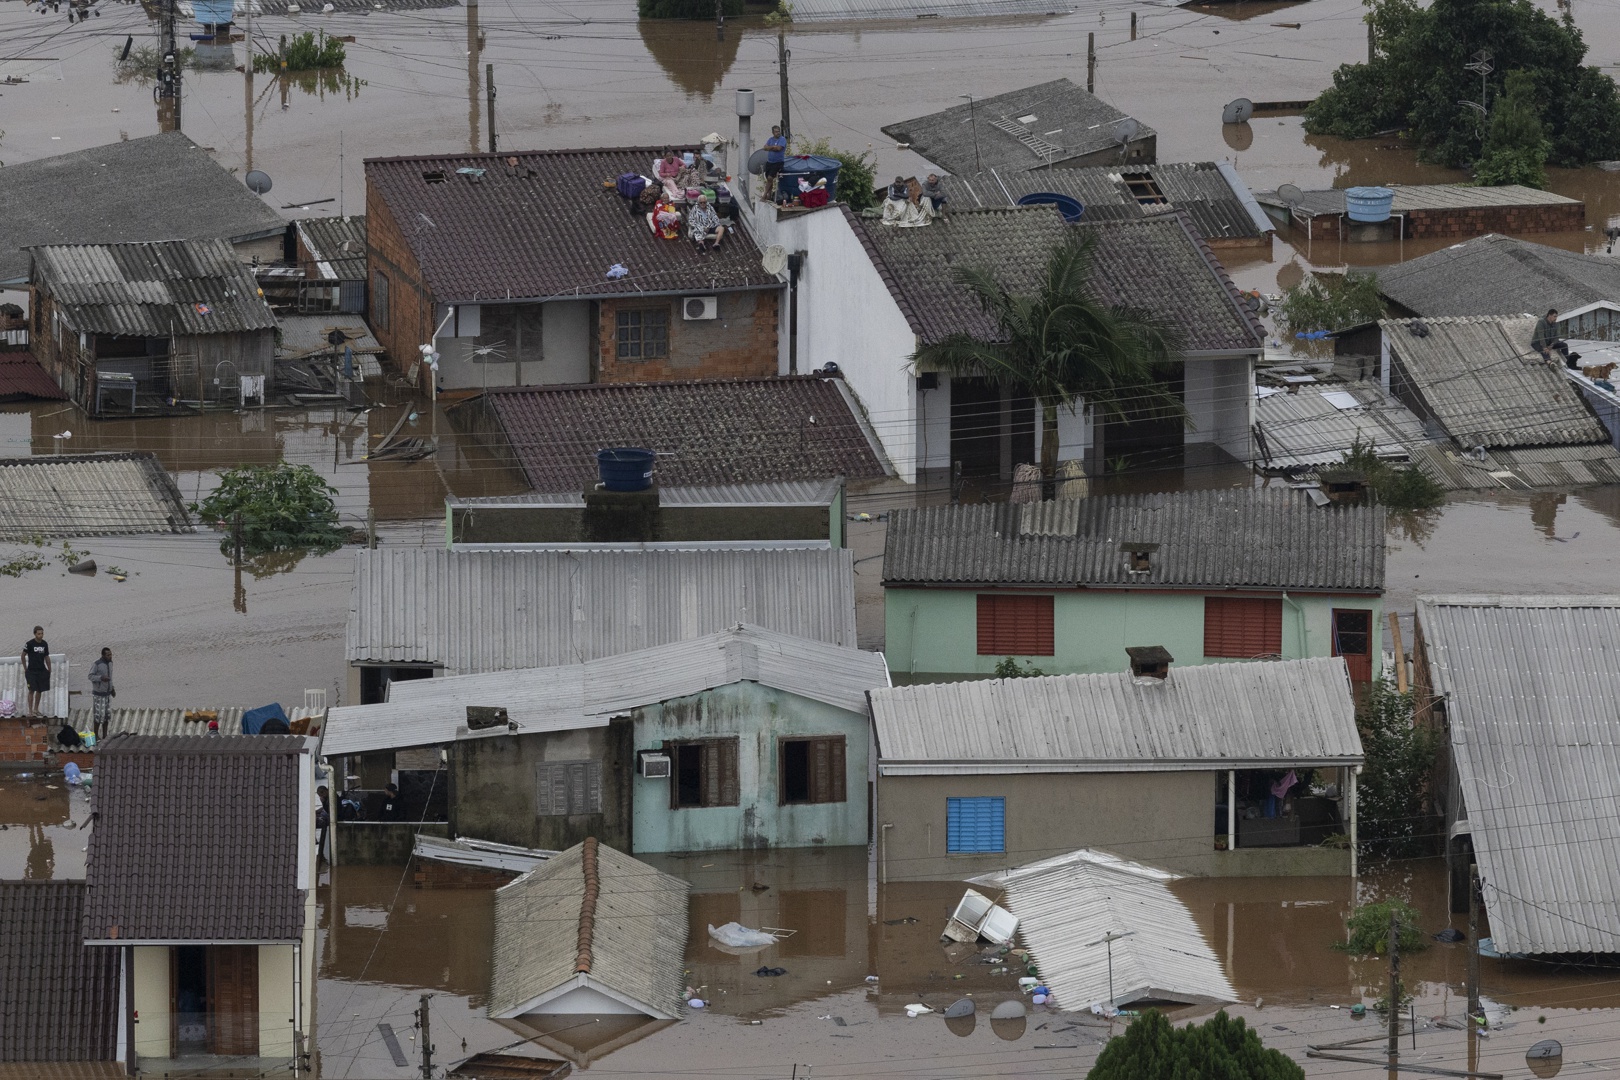 la ciudad brasileña de porto alegre, sumergida bajo las aguas en una inundación histórica